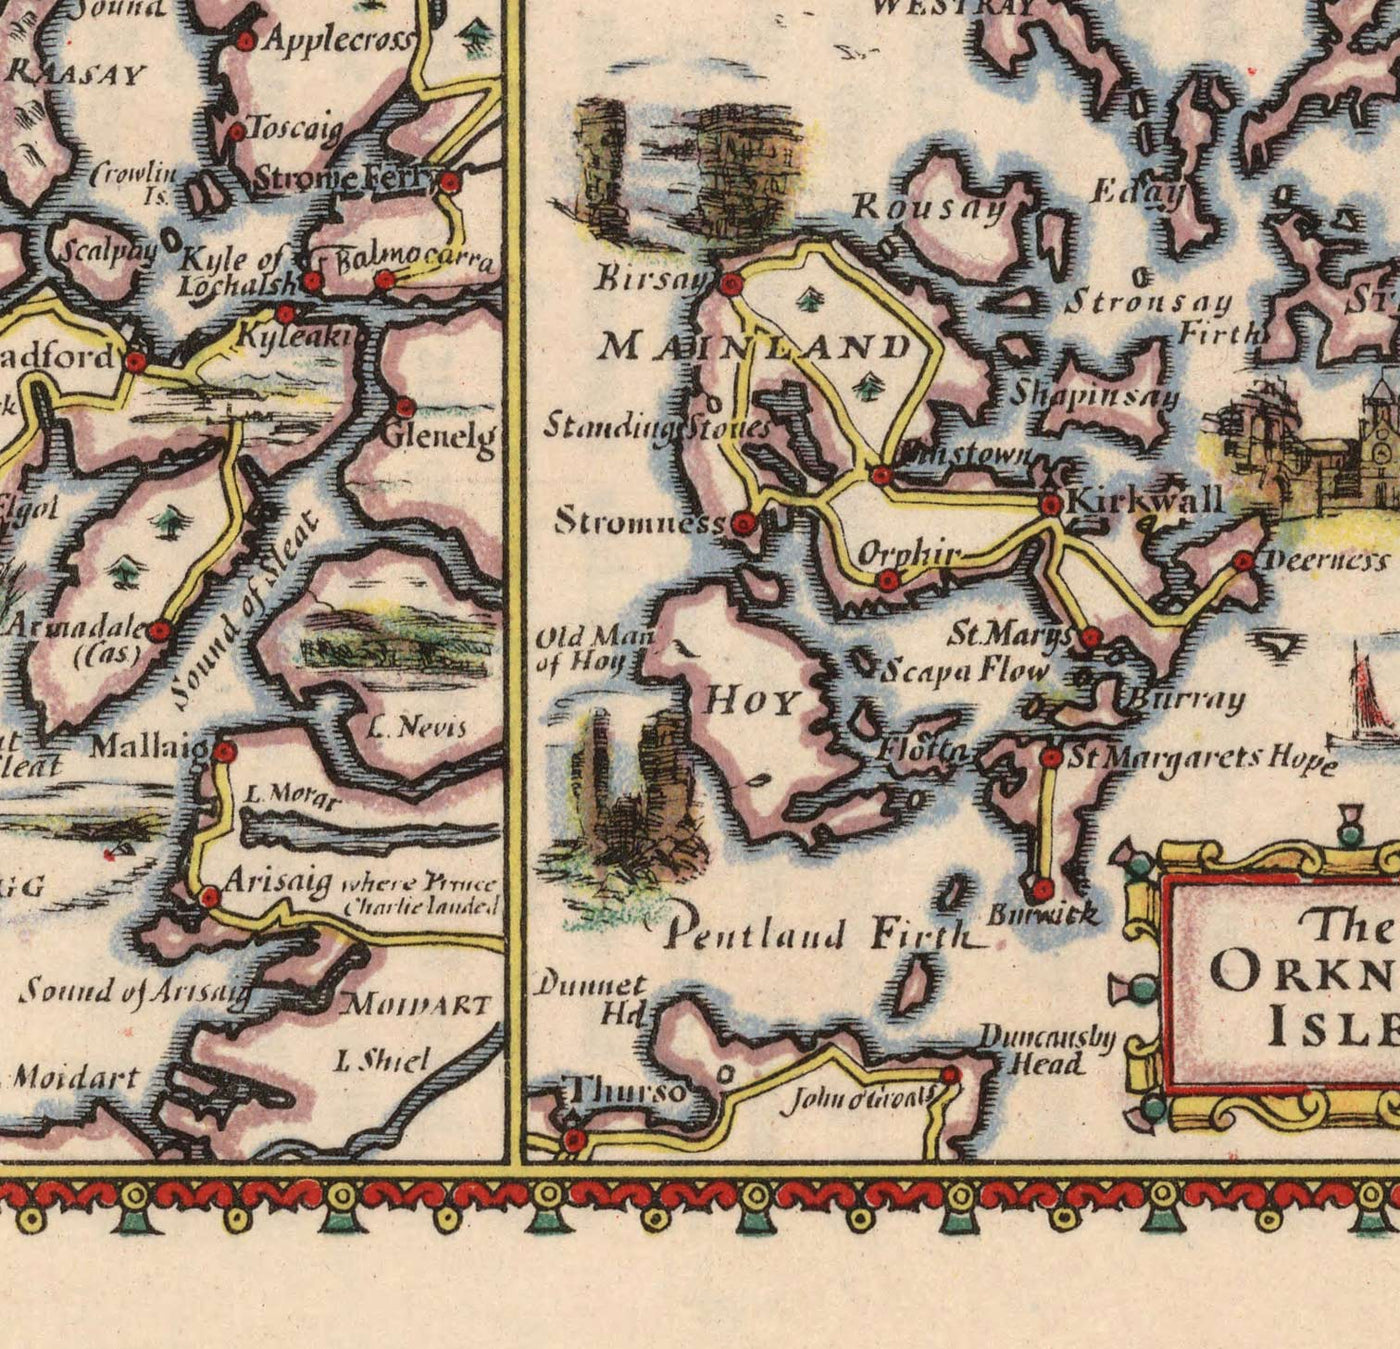 Alte Autokarte der schottischen Inseln - äußere, innere Hebriden, Shetland, Orkney, Skye